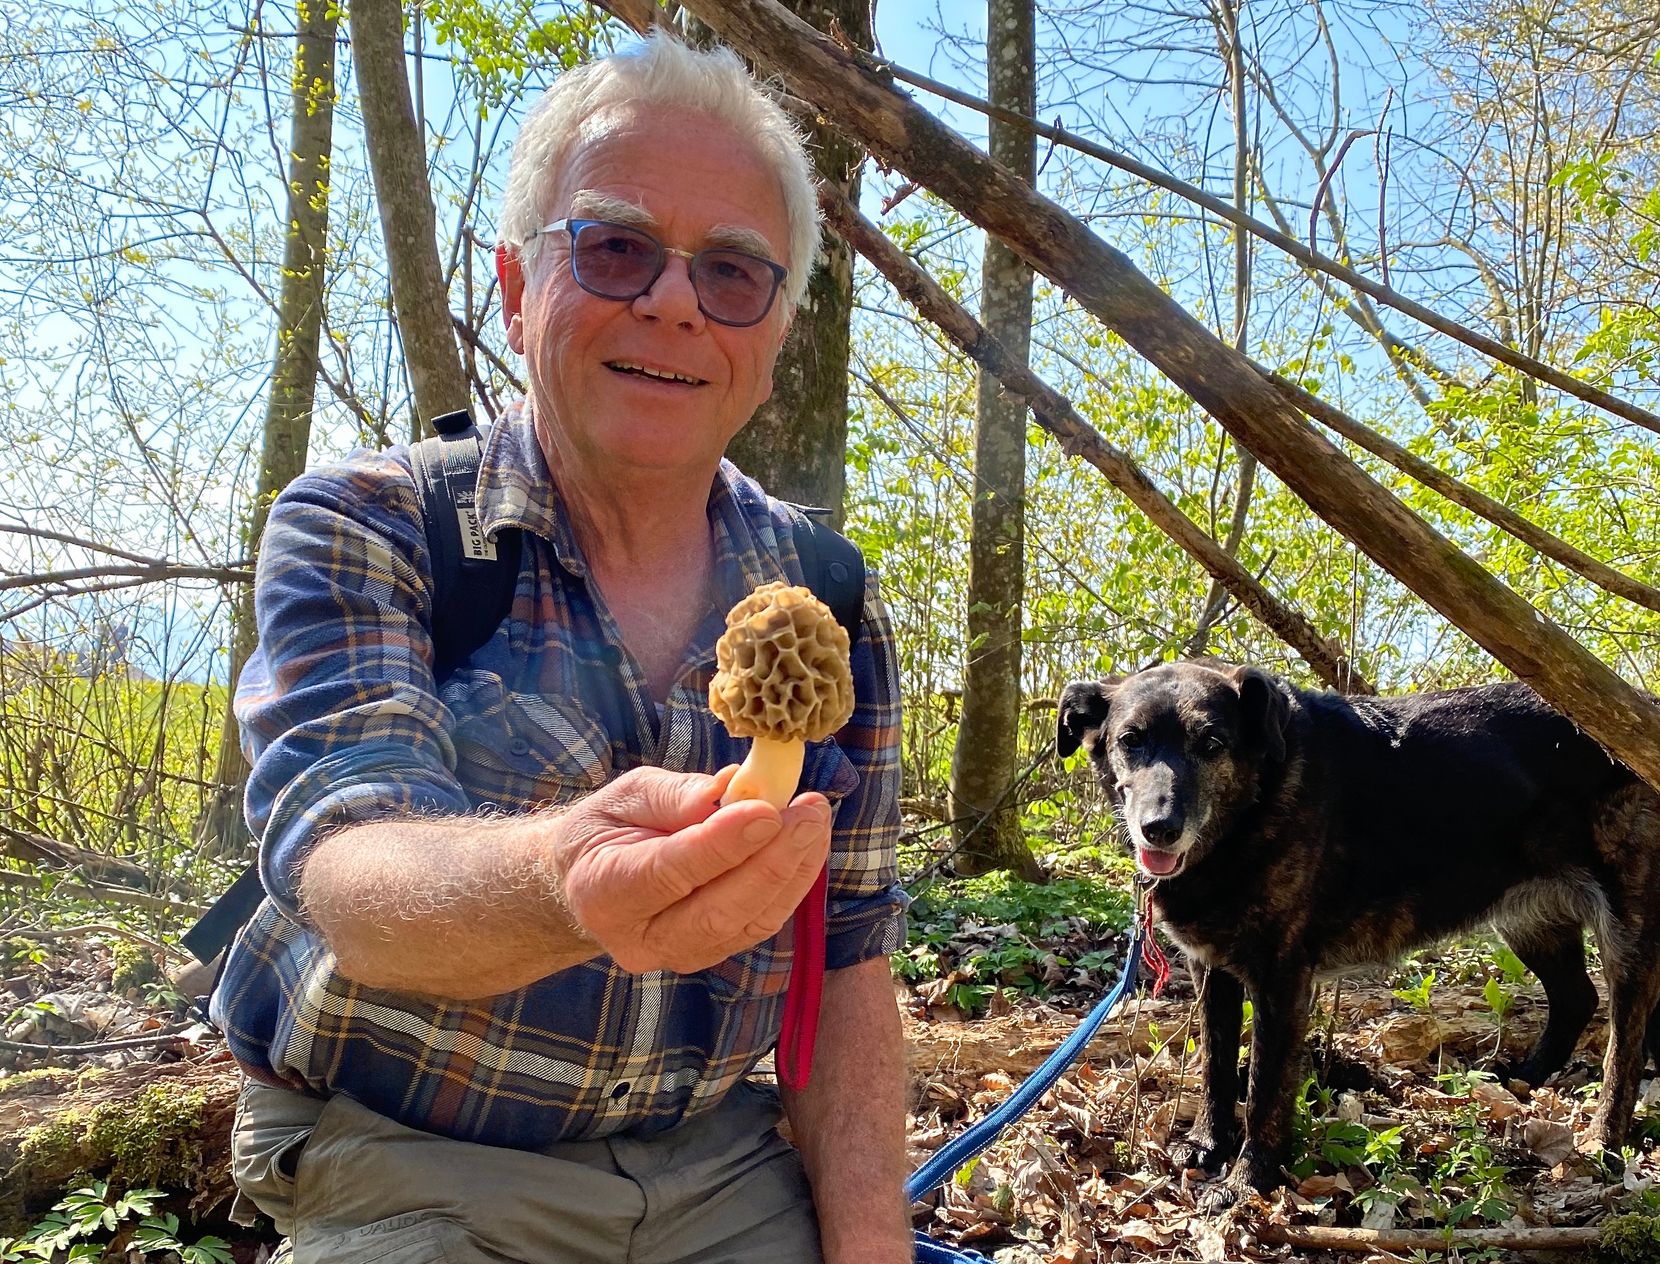 Mann kniet auf Waldboden und hält Pilz in die Kamera, im Hintergrund hat es einen Hund.